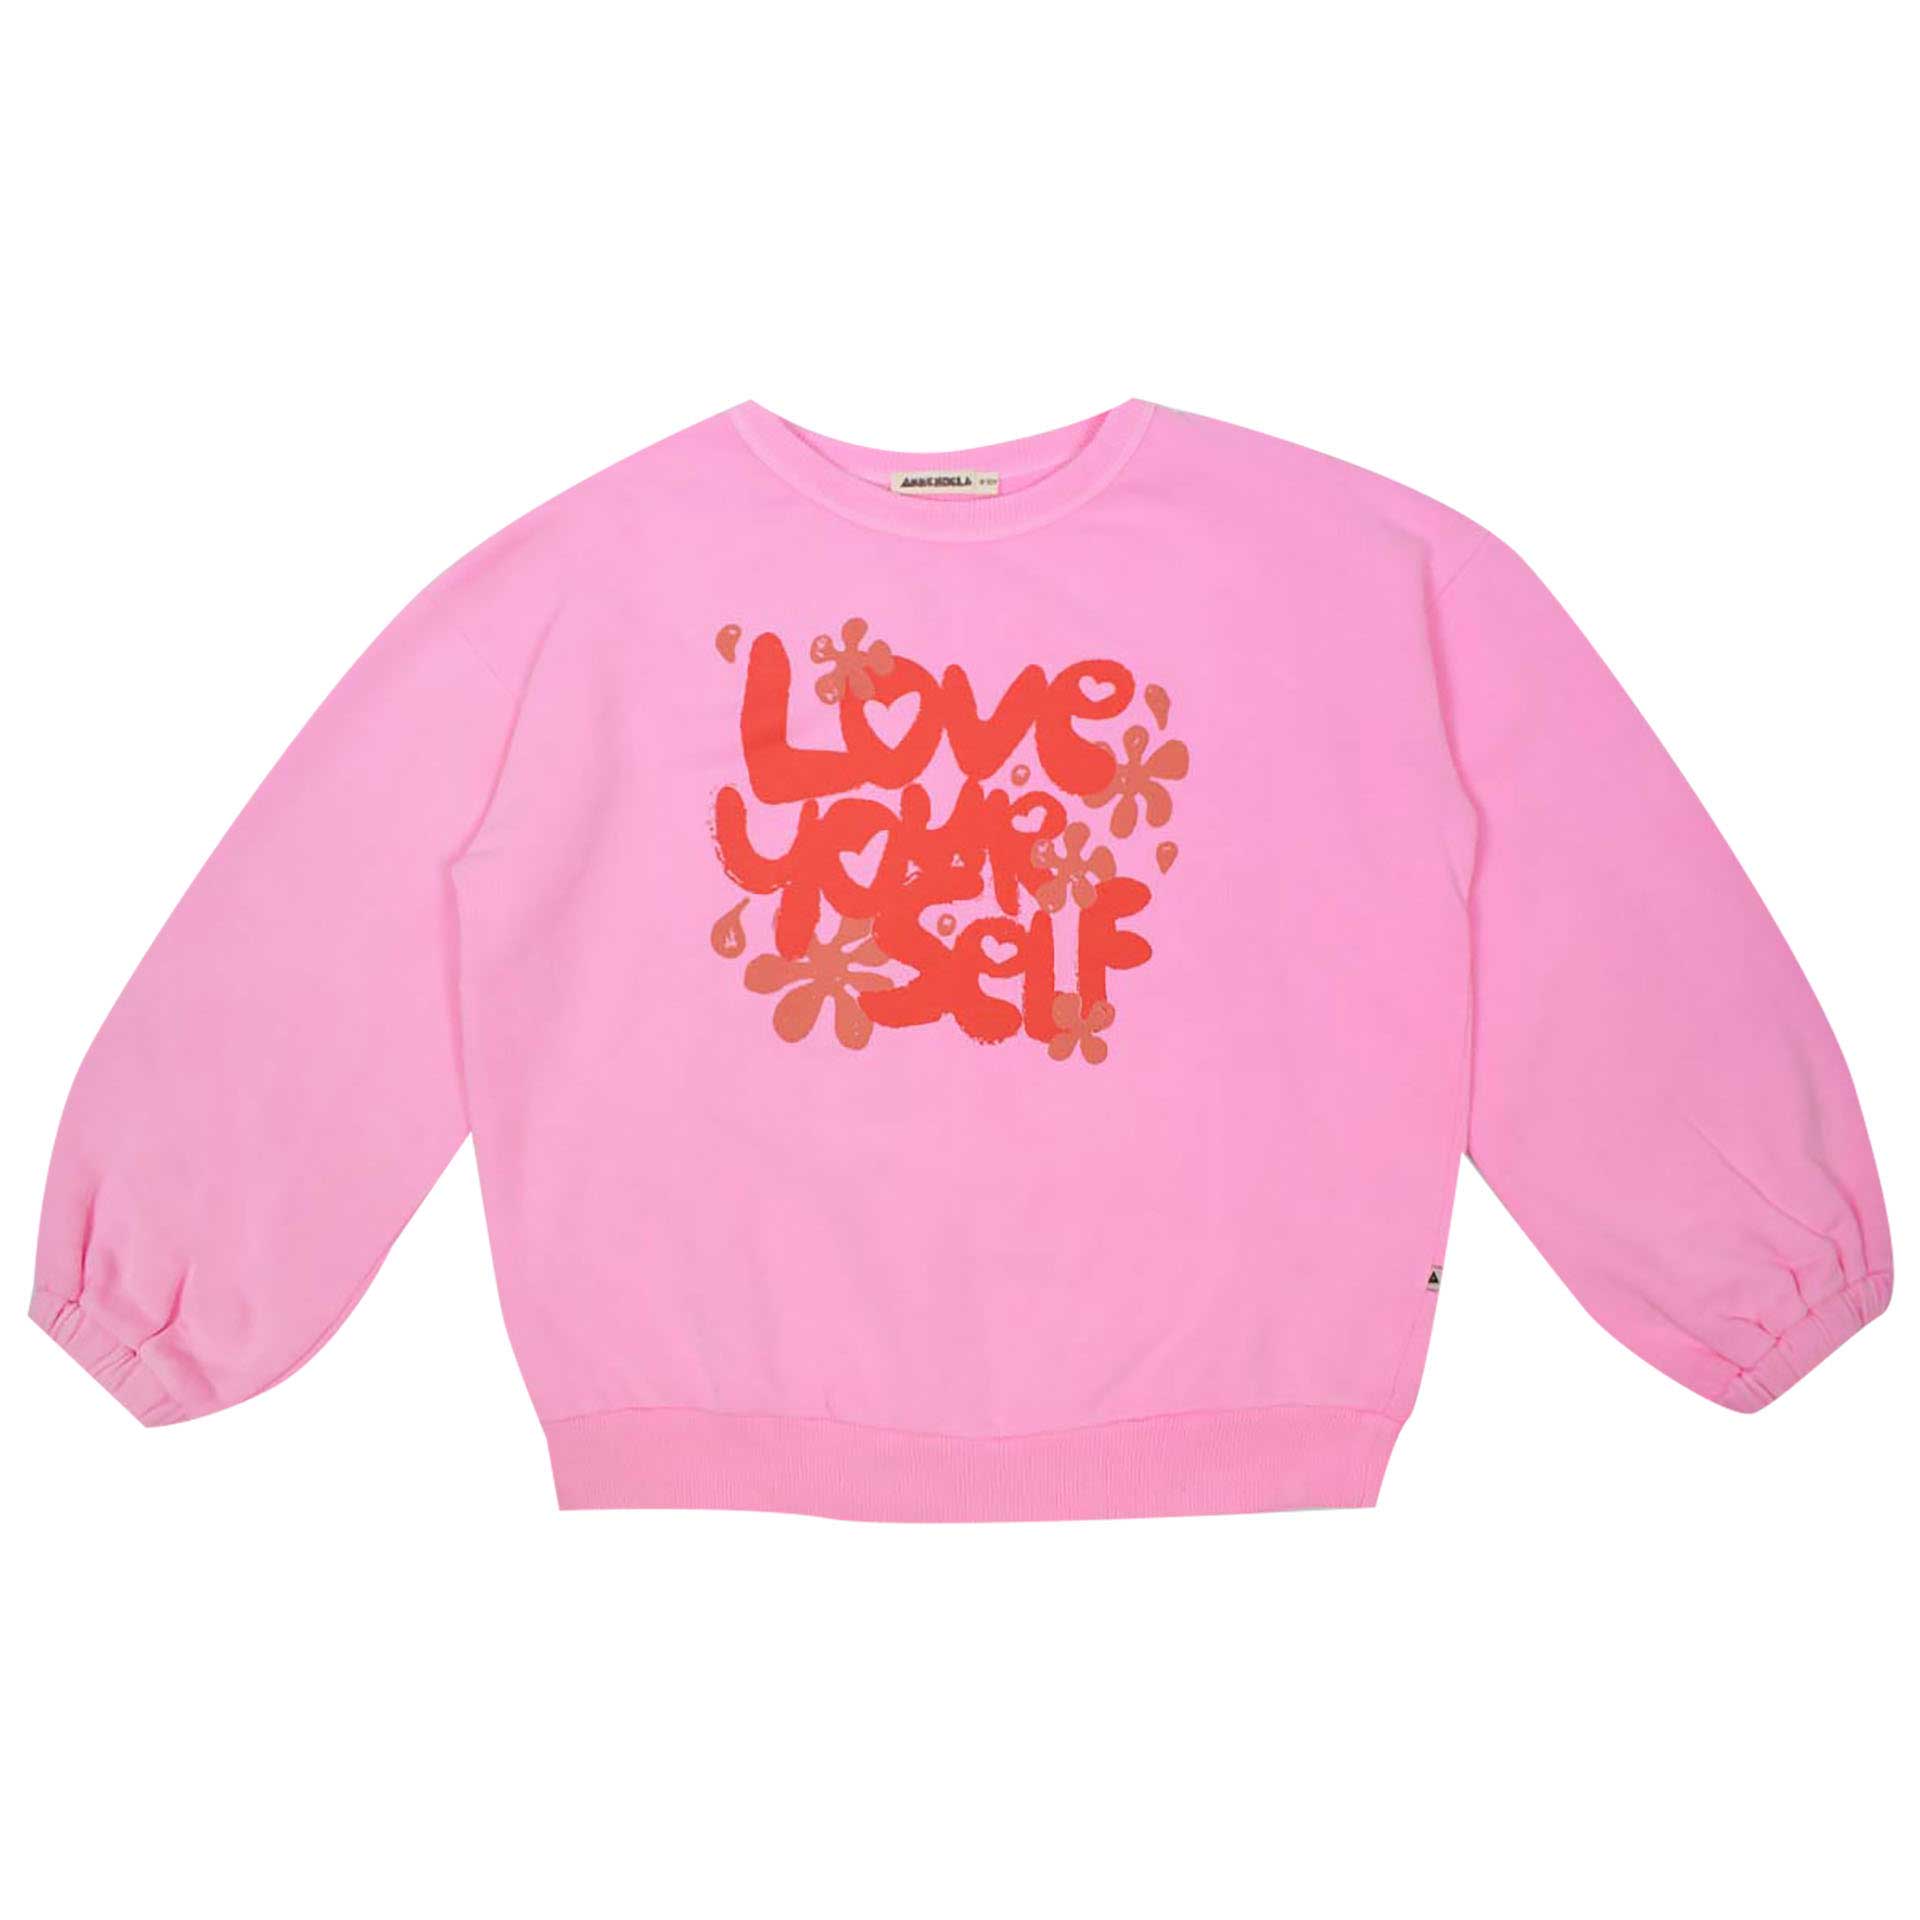 Ammehoela Sweater Roxy 1